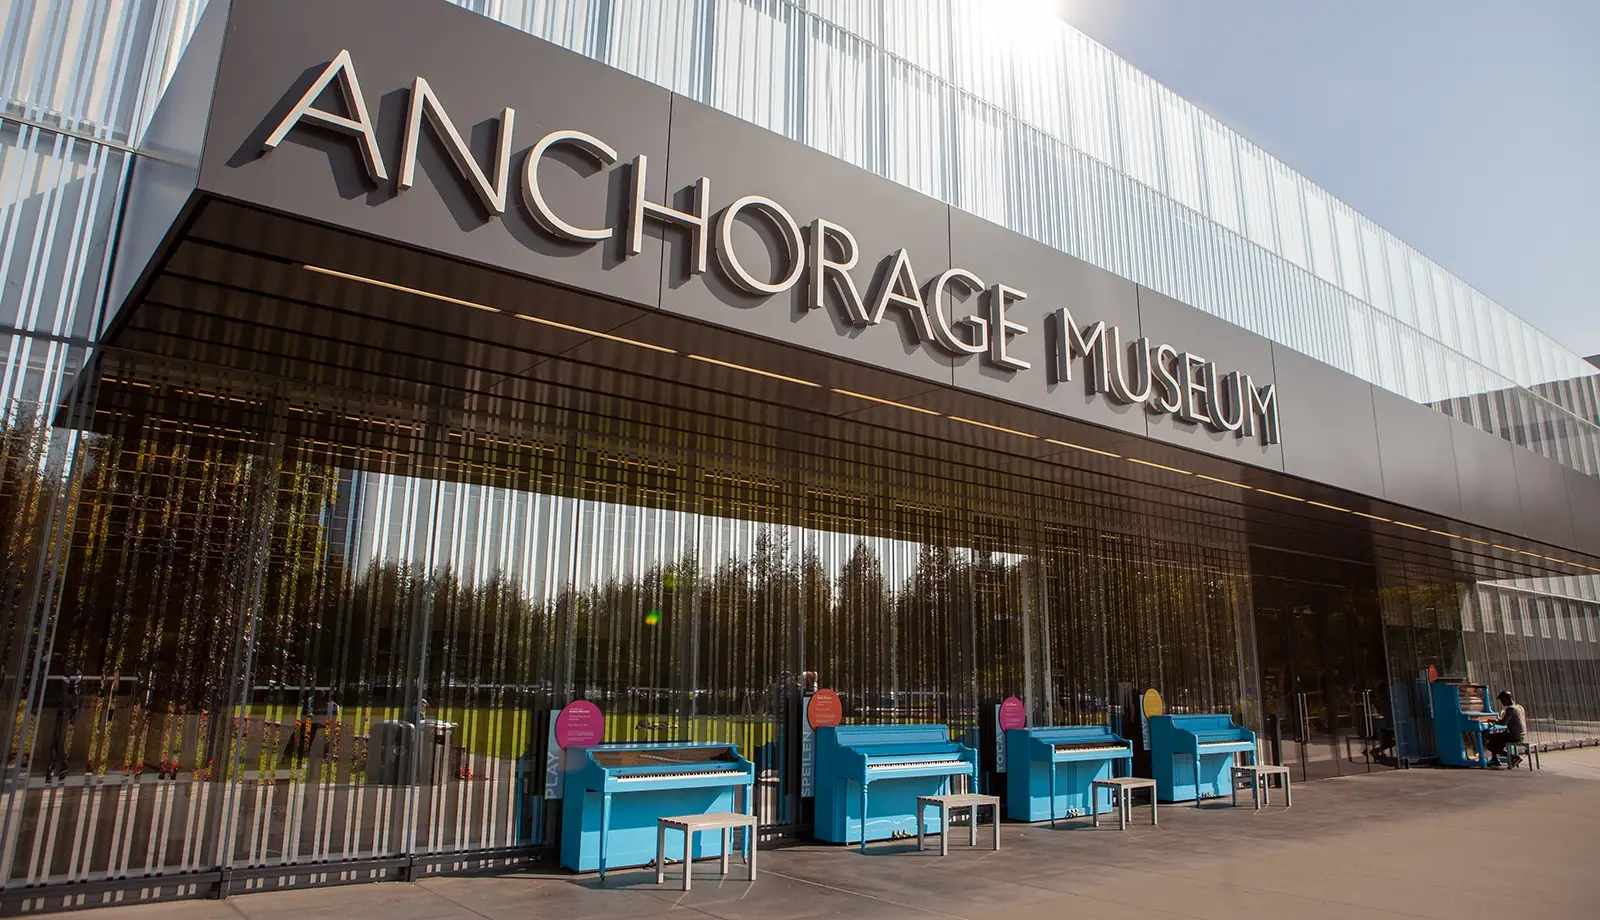 Bảo tàng Anchorage - Nơi hội tụ của nghệ thuật, lịch sử và văn hóa Alaska